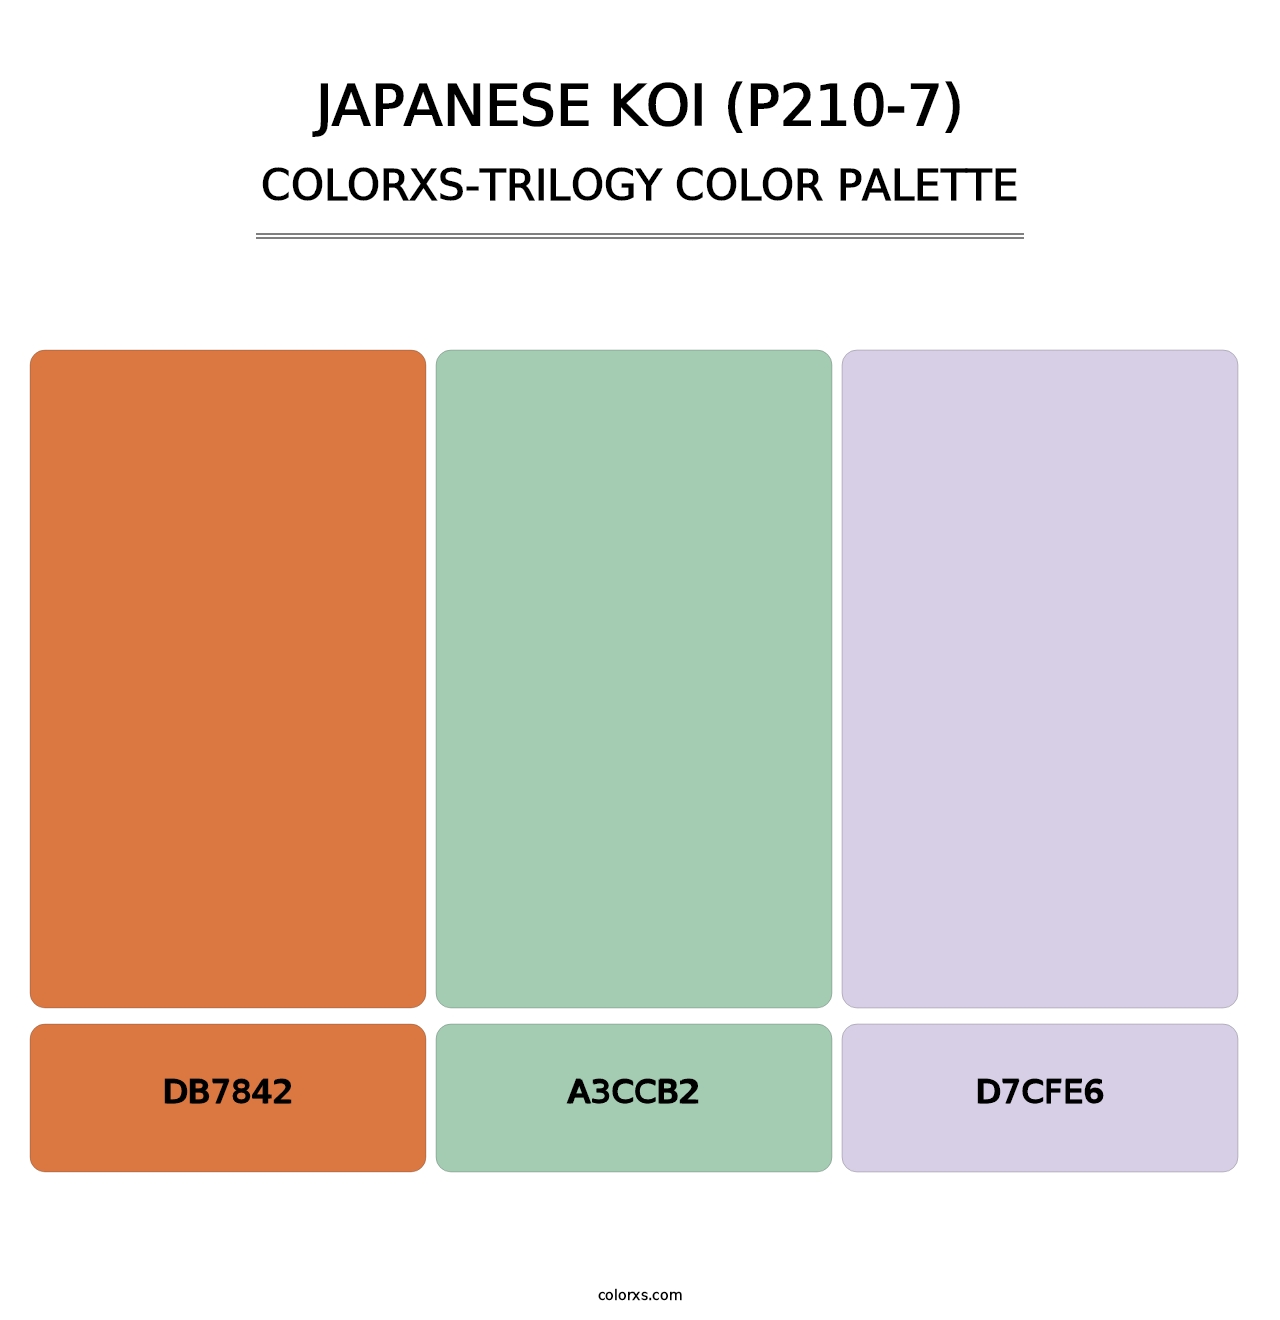 Japanese Koi (P210-7) - Colorxs Trilogy Palette